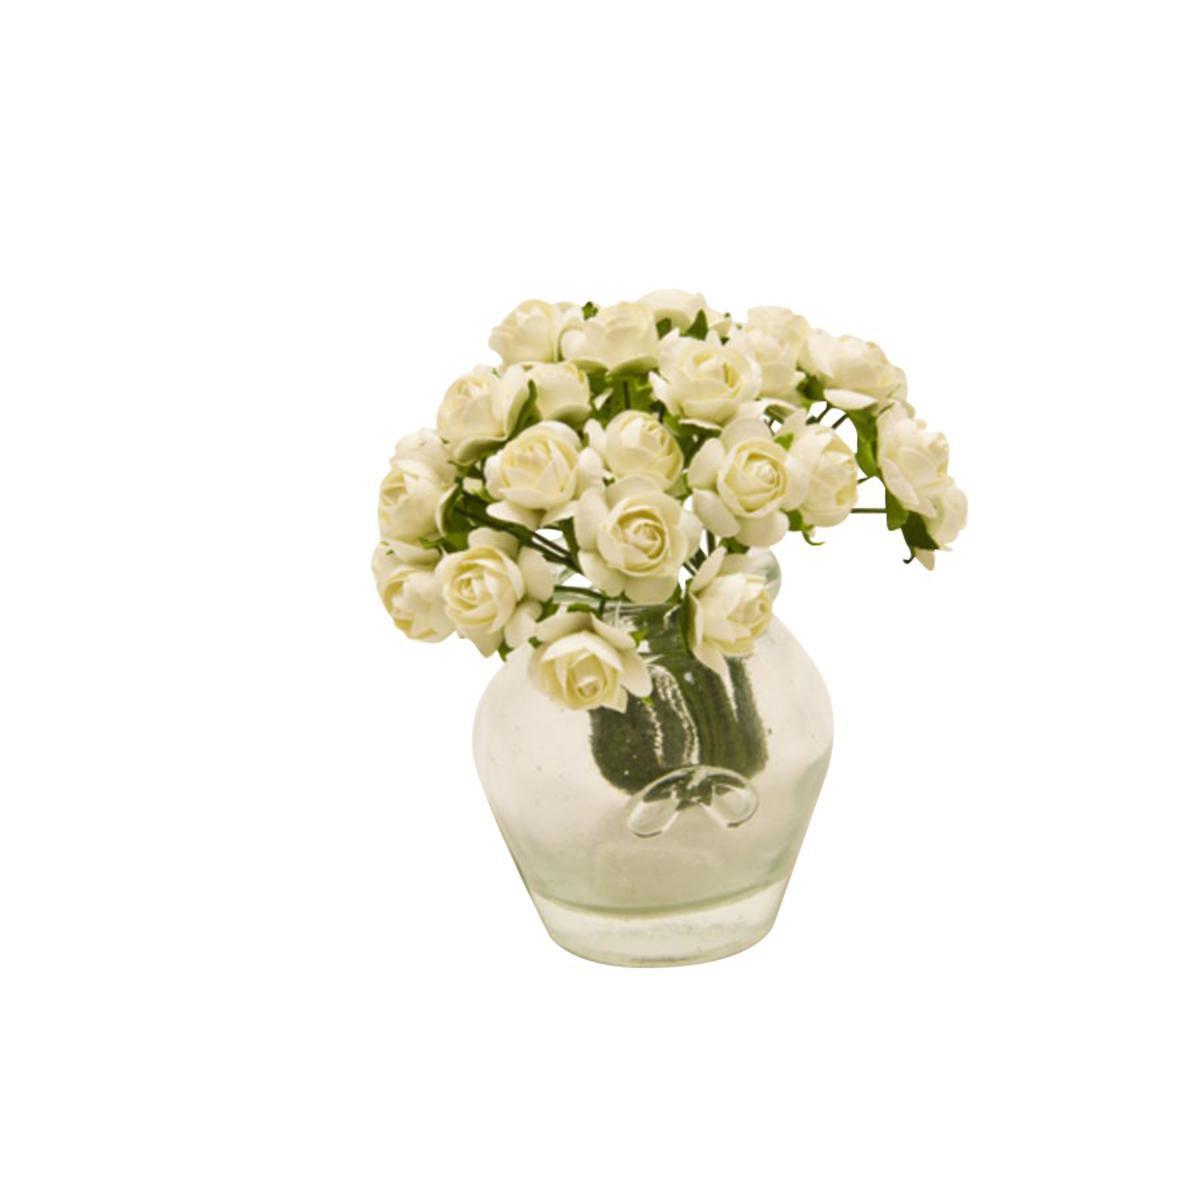 Lot de 36 mini fleurs en papier - Diamètre 1,5 cm - Blanc ivoire